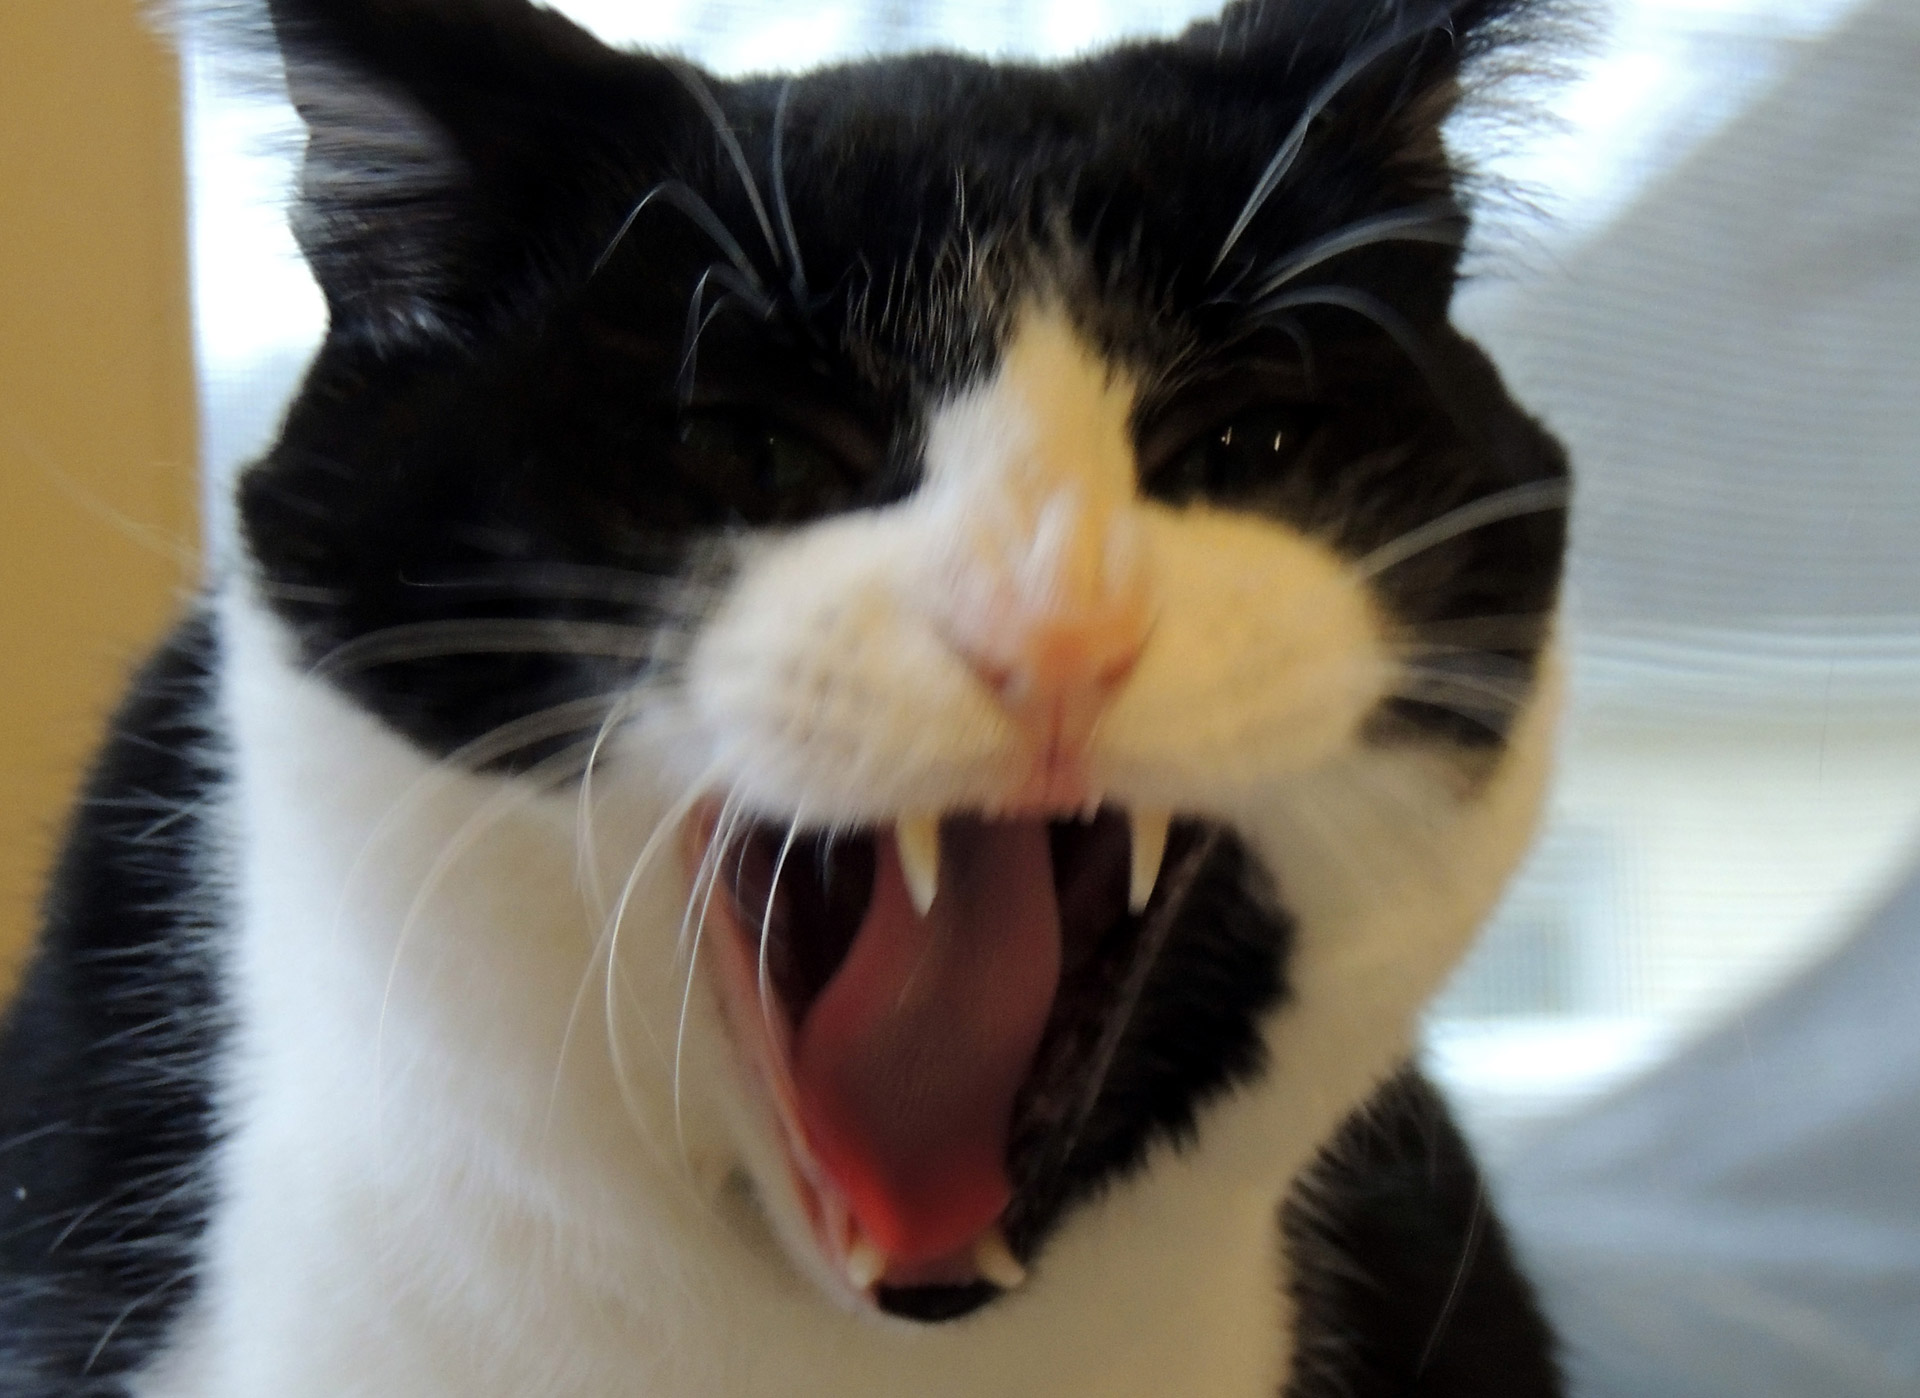 Yawning Tuxedo Cat Free Stock Photo - Public Domain Pictures